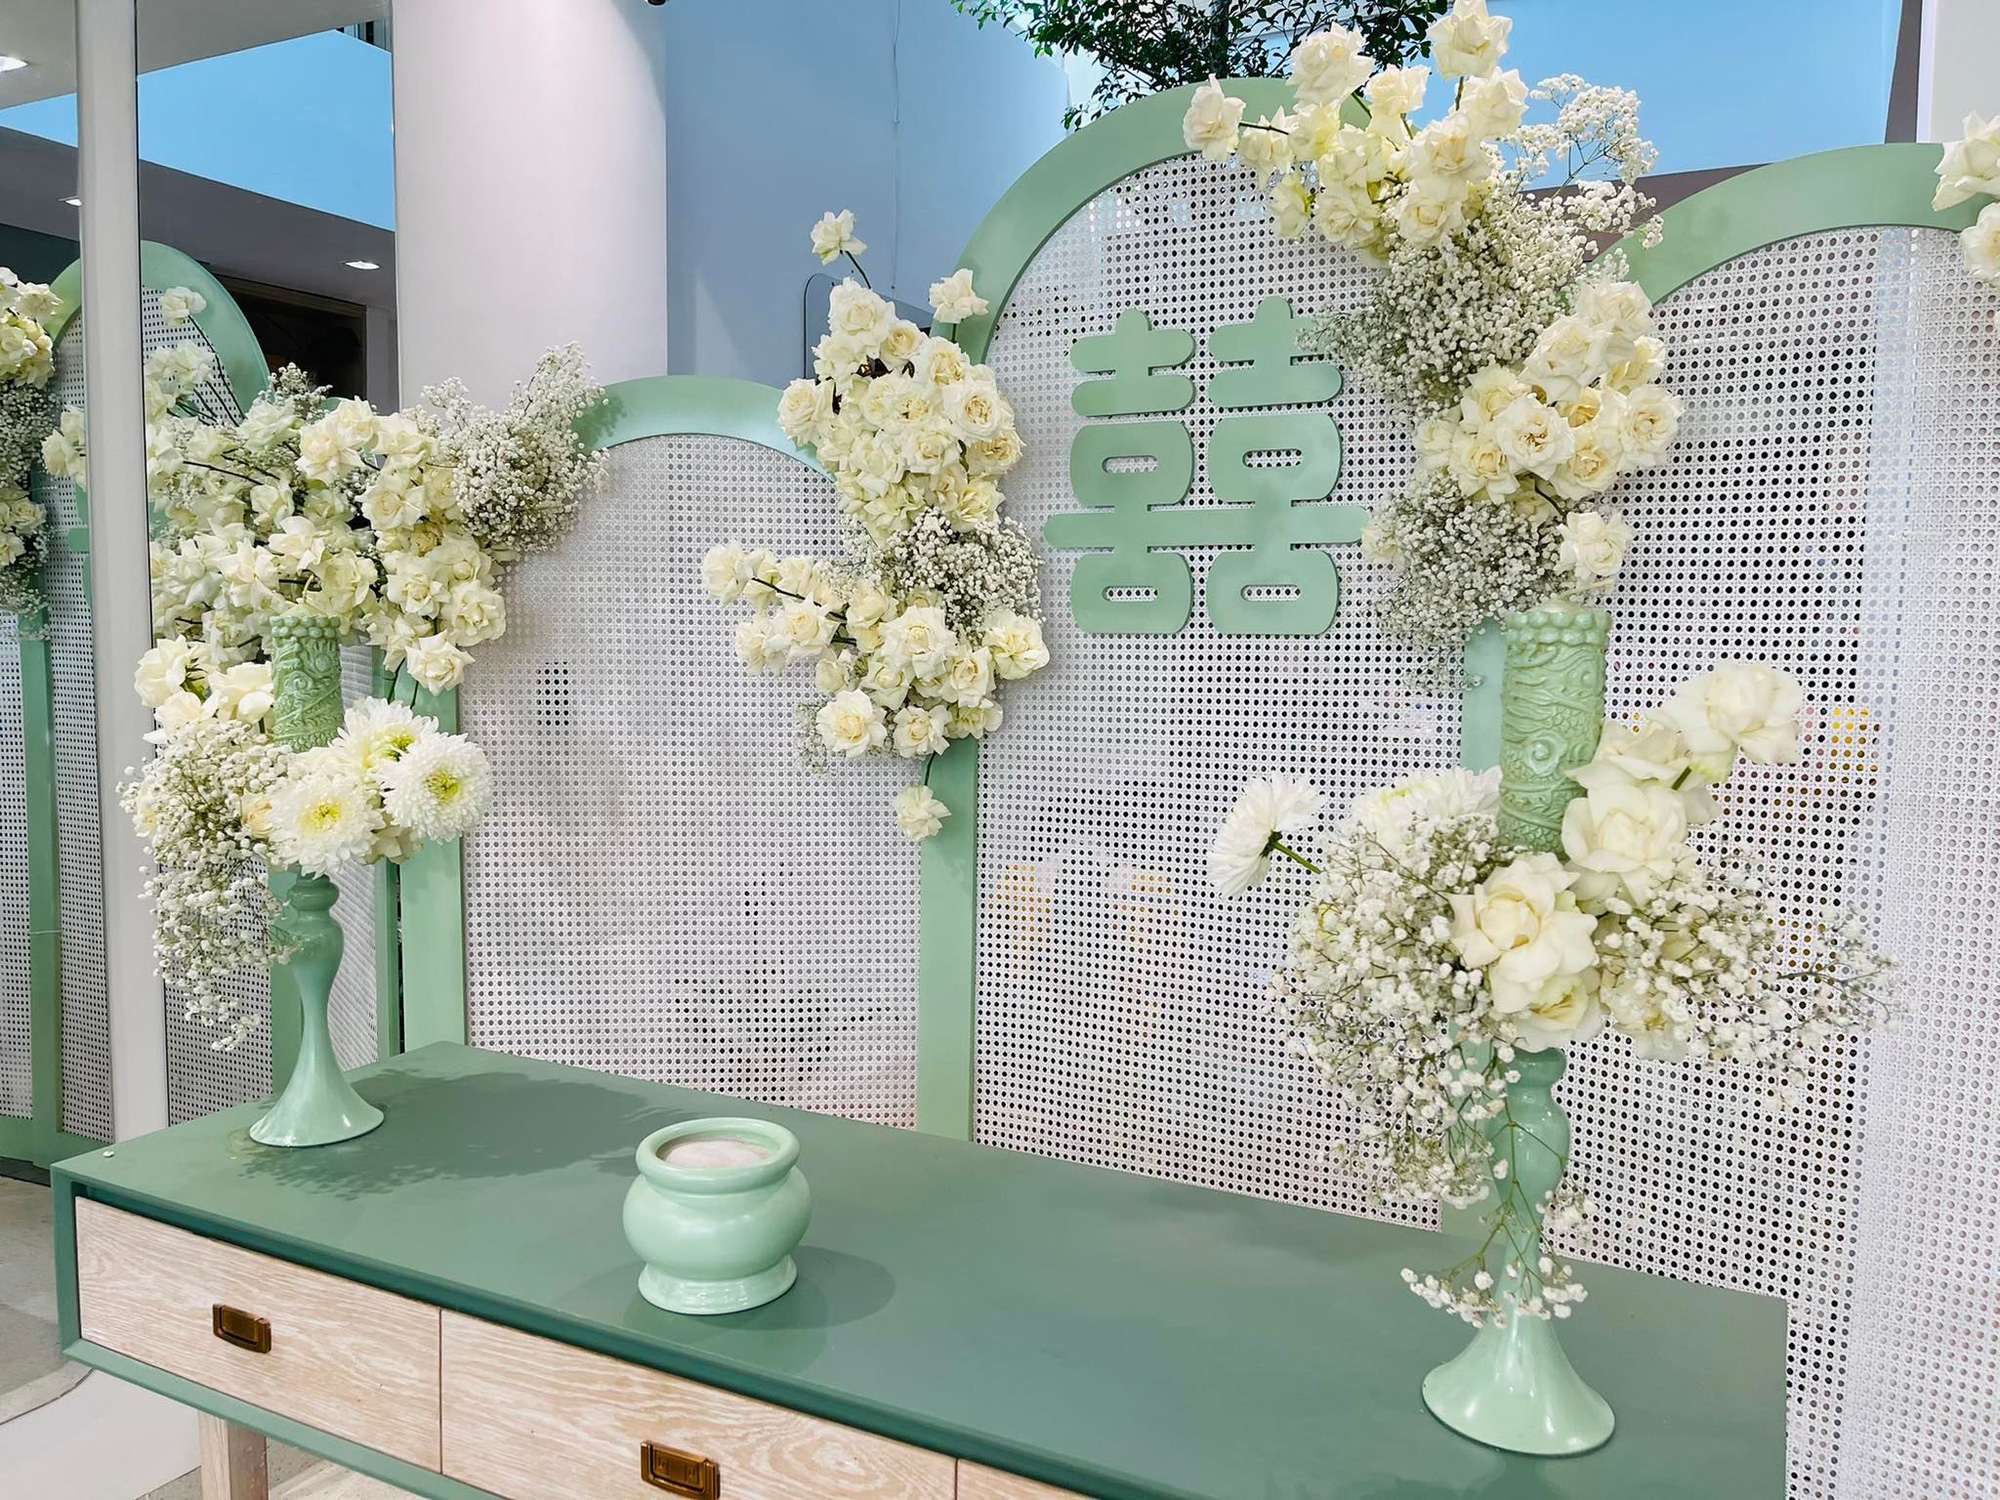 Đám cưới Phương Trinh Jolie - Lý Bình: Nhà riêng trang hoàng đầy hoa tươi, tông màu cưới xanh mint quá xinh-6